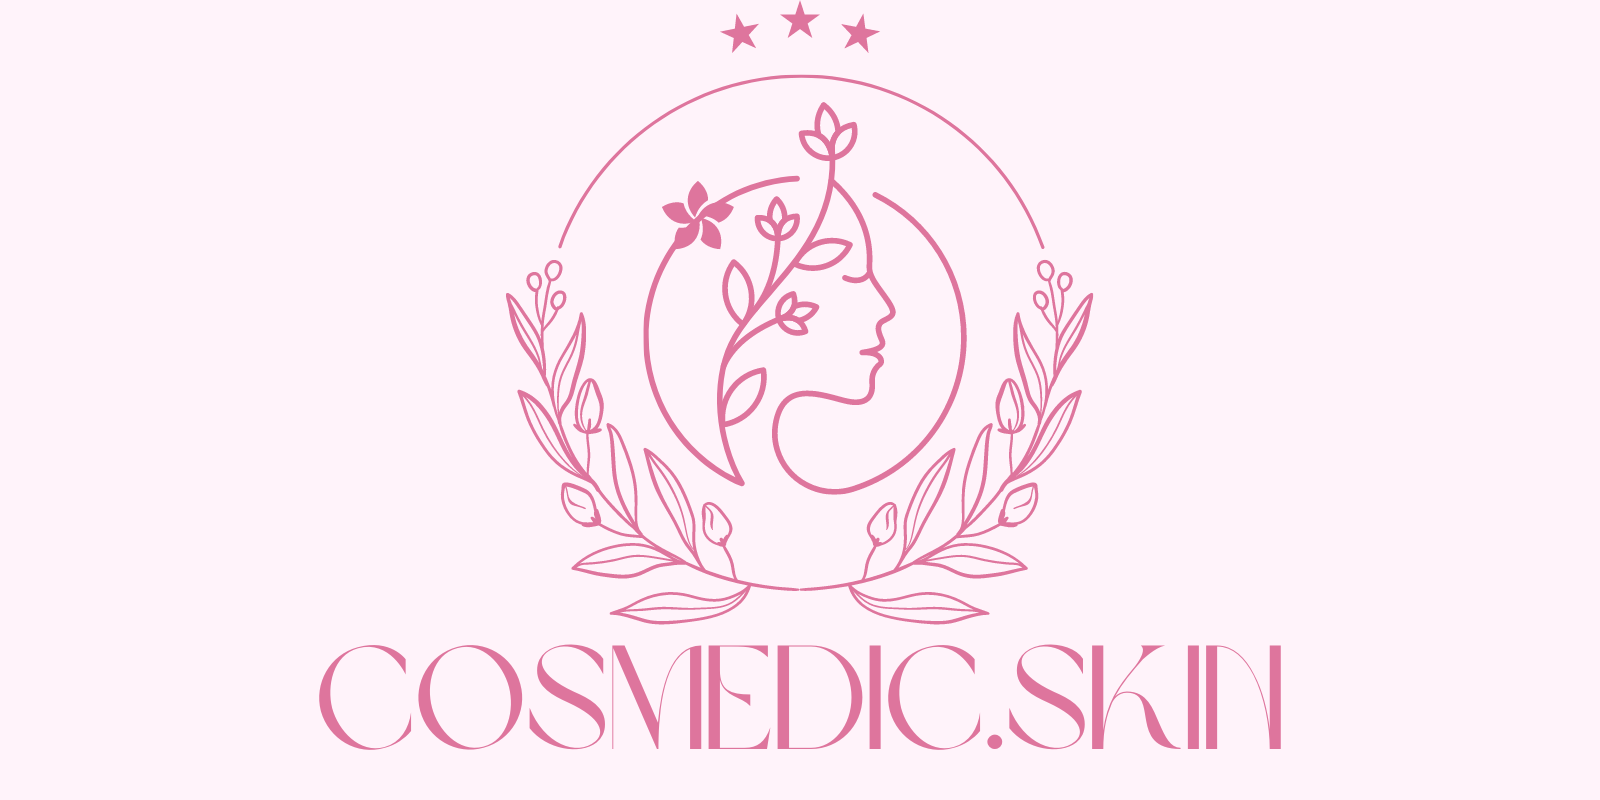 Cosmedic.skin